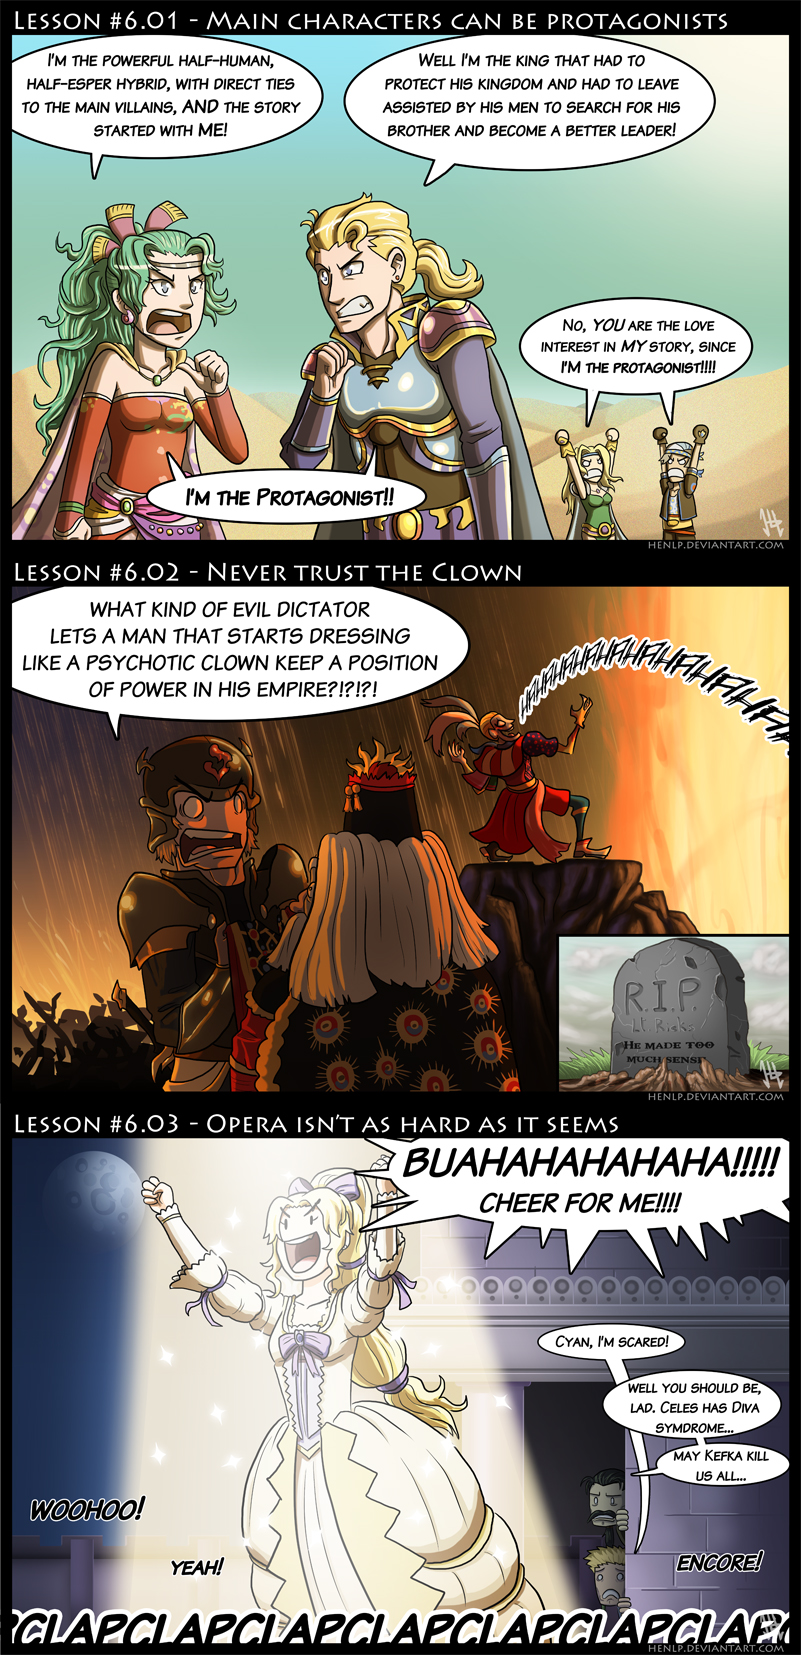 Final Fantasy VI Lessons